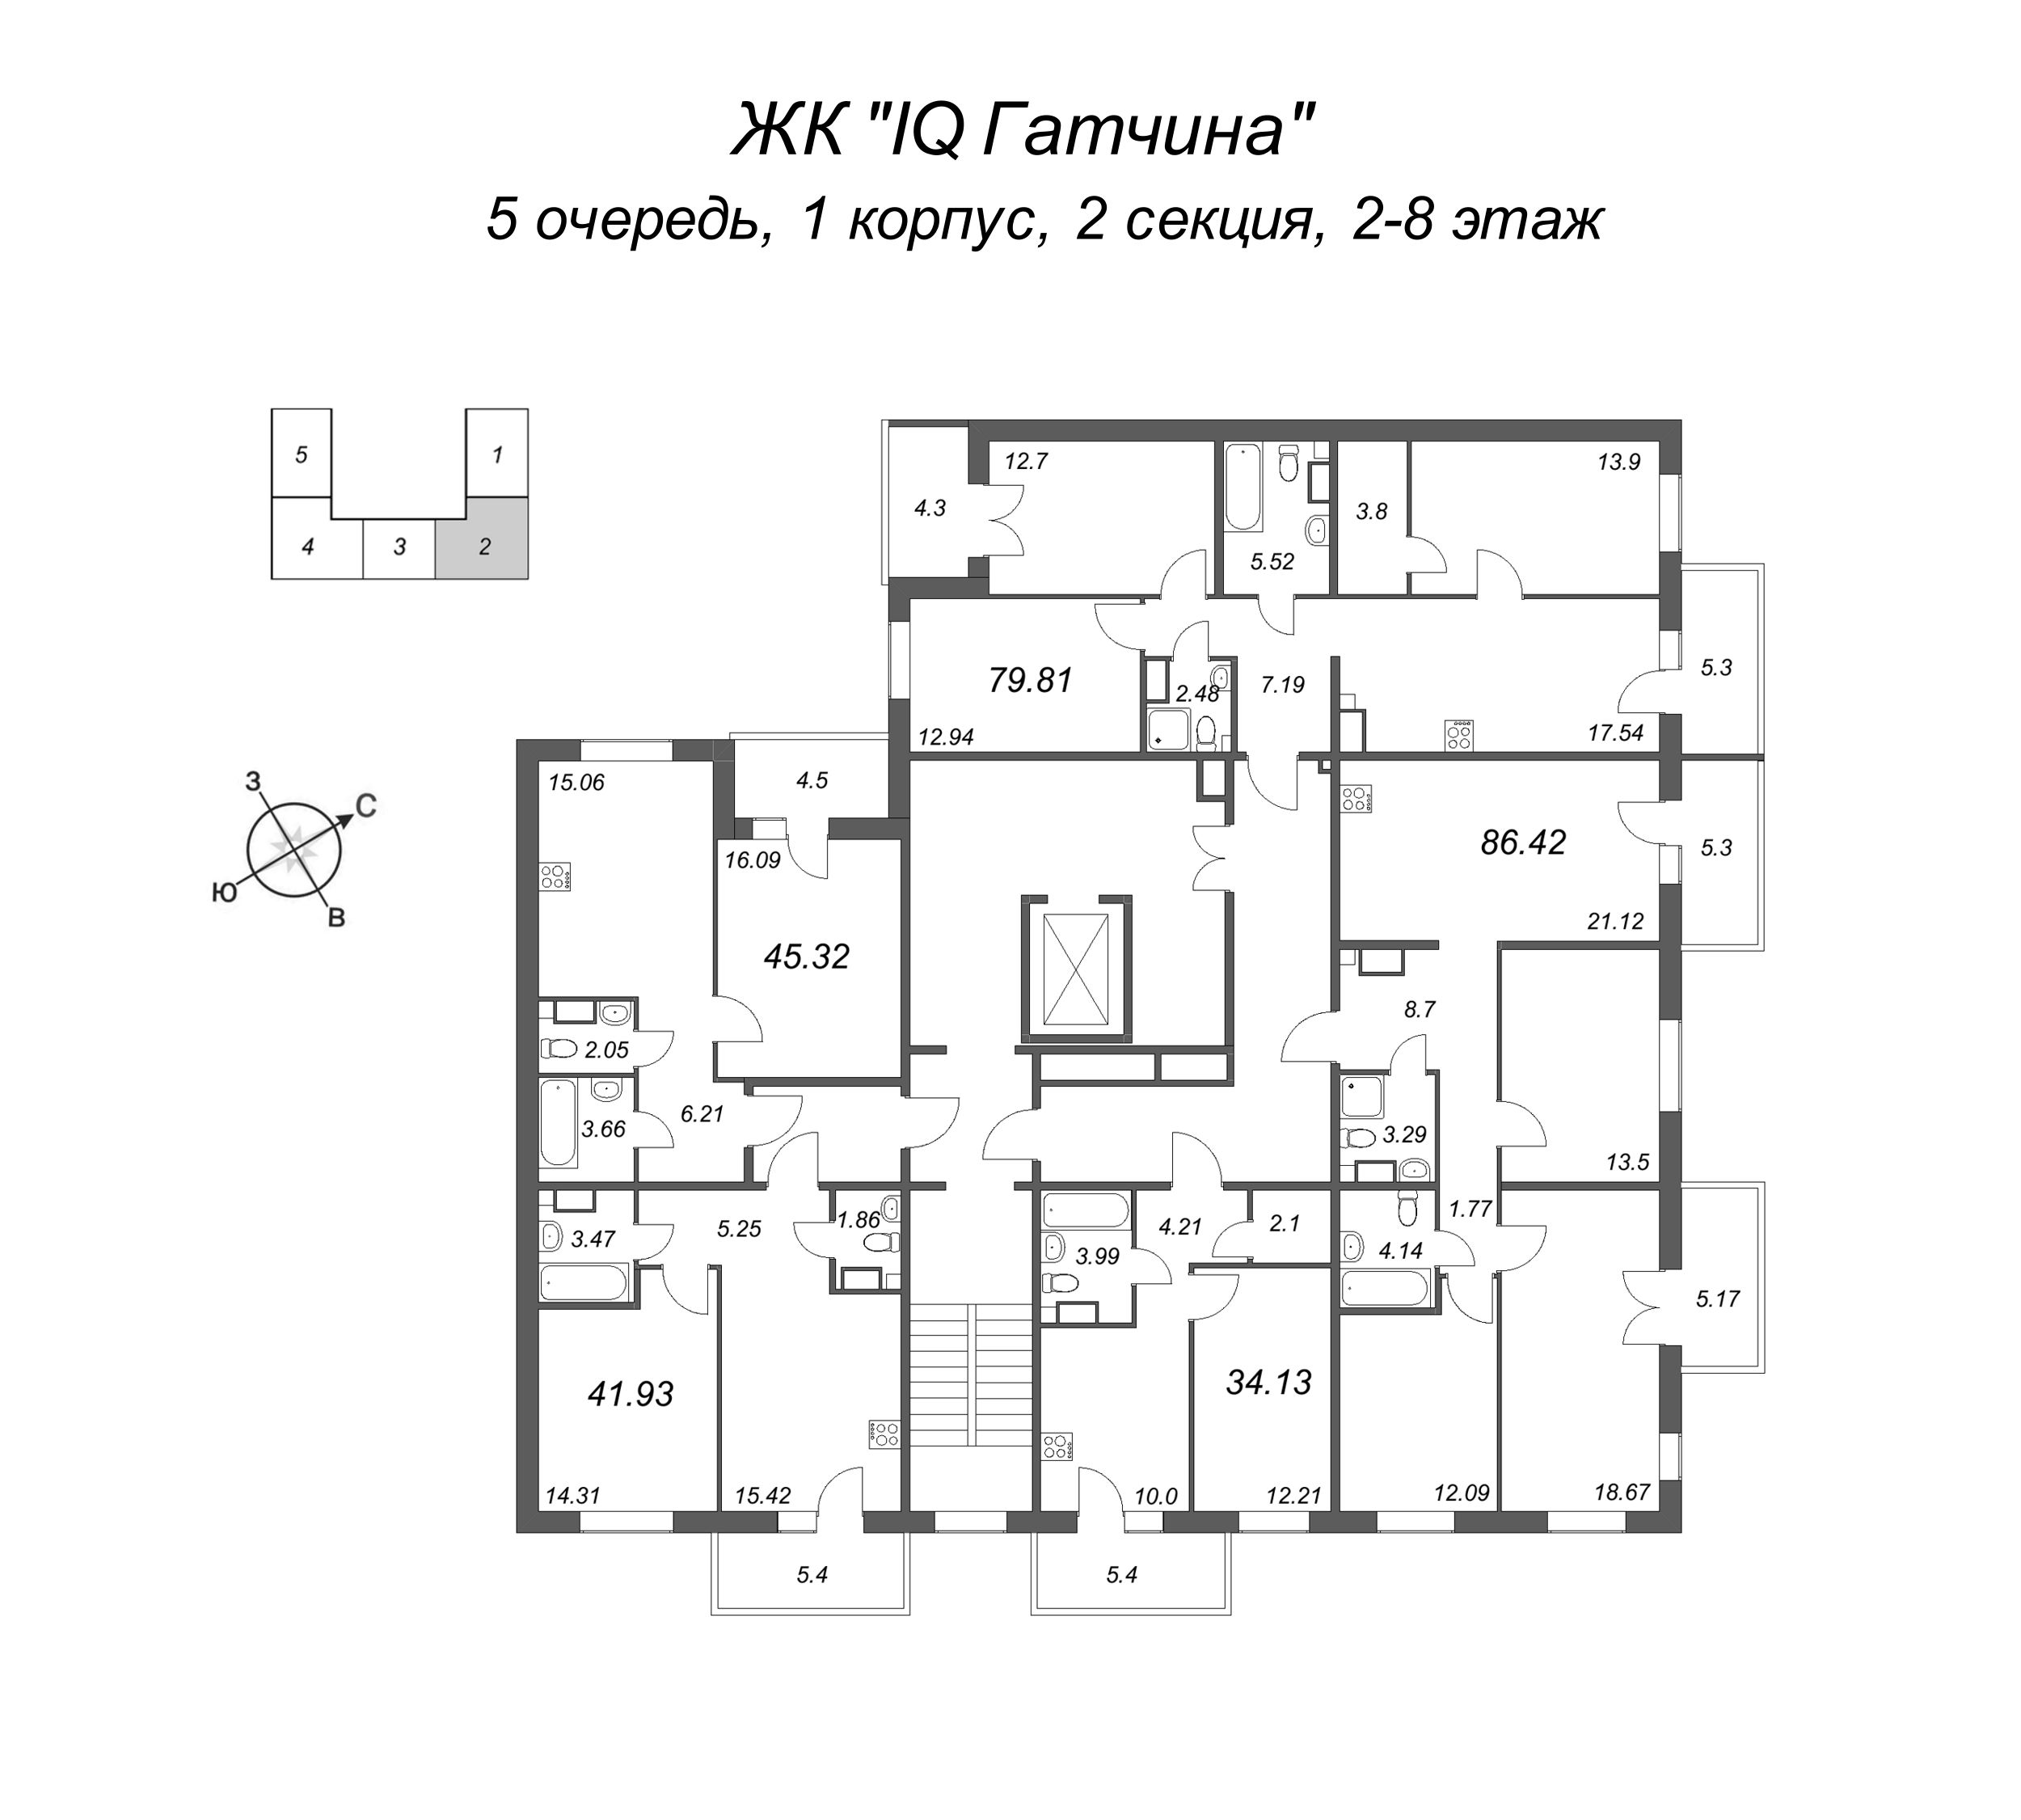 4-комнатная (Евро) квартира, 80.31 м² в ЖК "IQ Гатчина" - планировка этажа